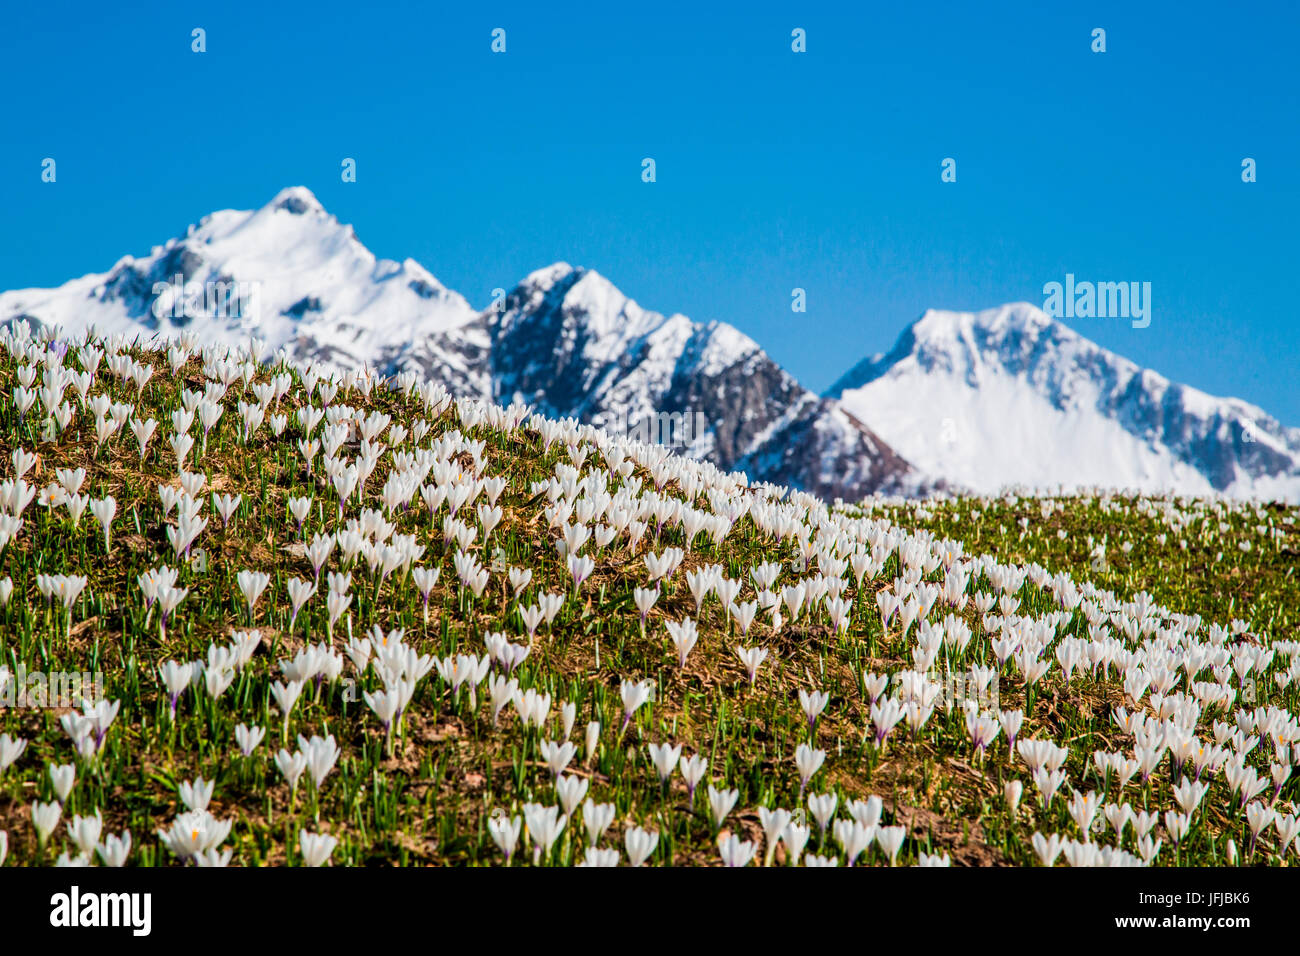 Les champs verts et fleurs contraste avec les sommets enneigés de la vallée de Bitto, Alpes Orobie, Valtellina, Lombardie, Italie, Europe Banque D'Images